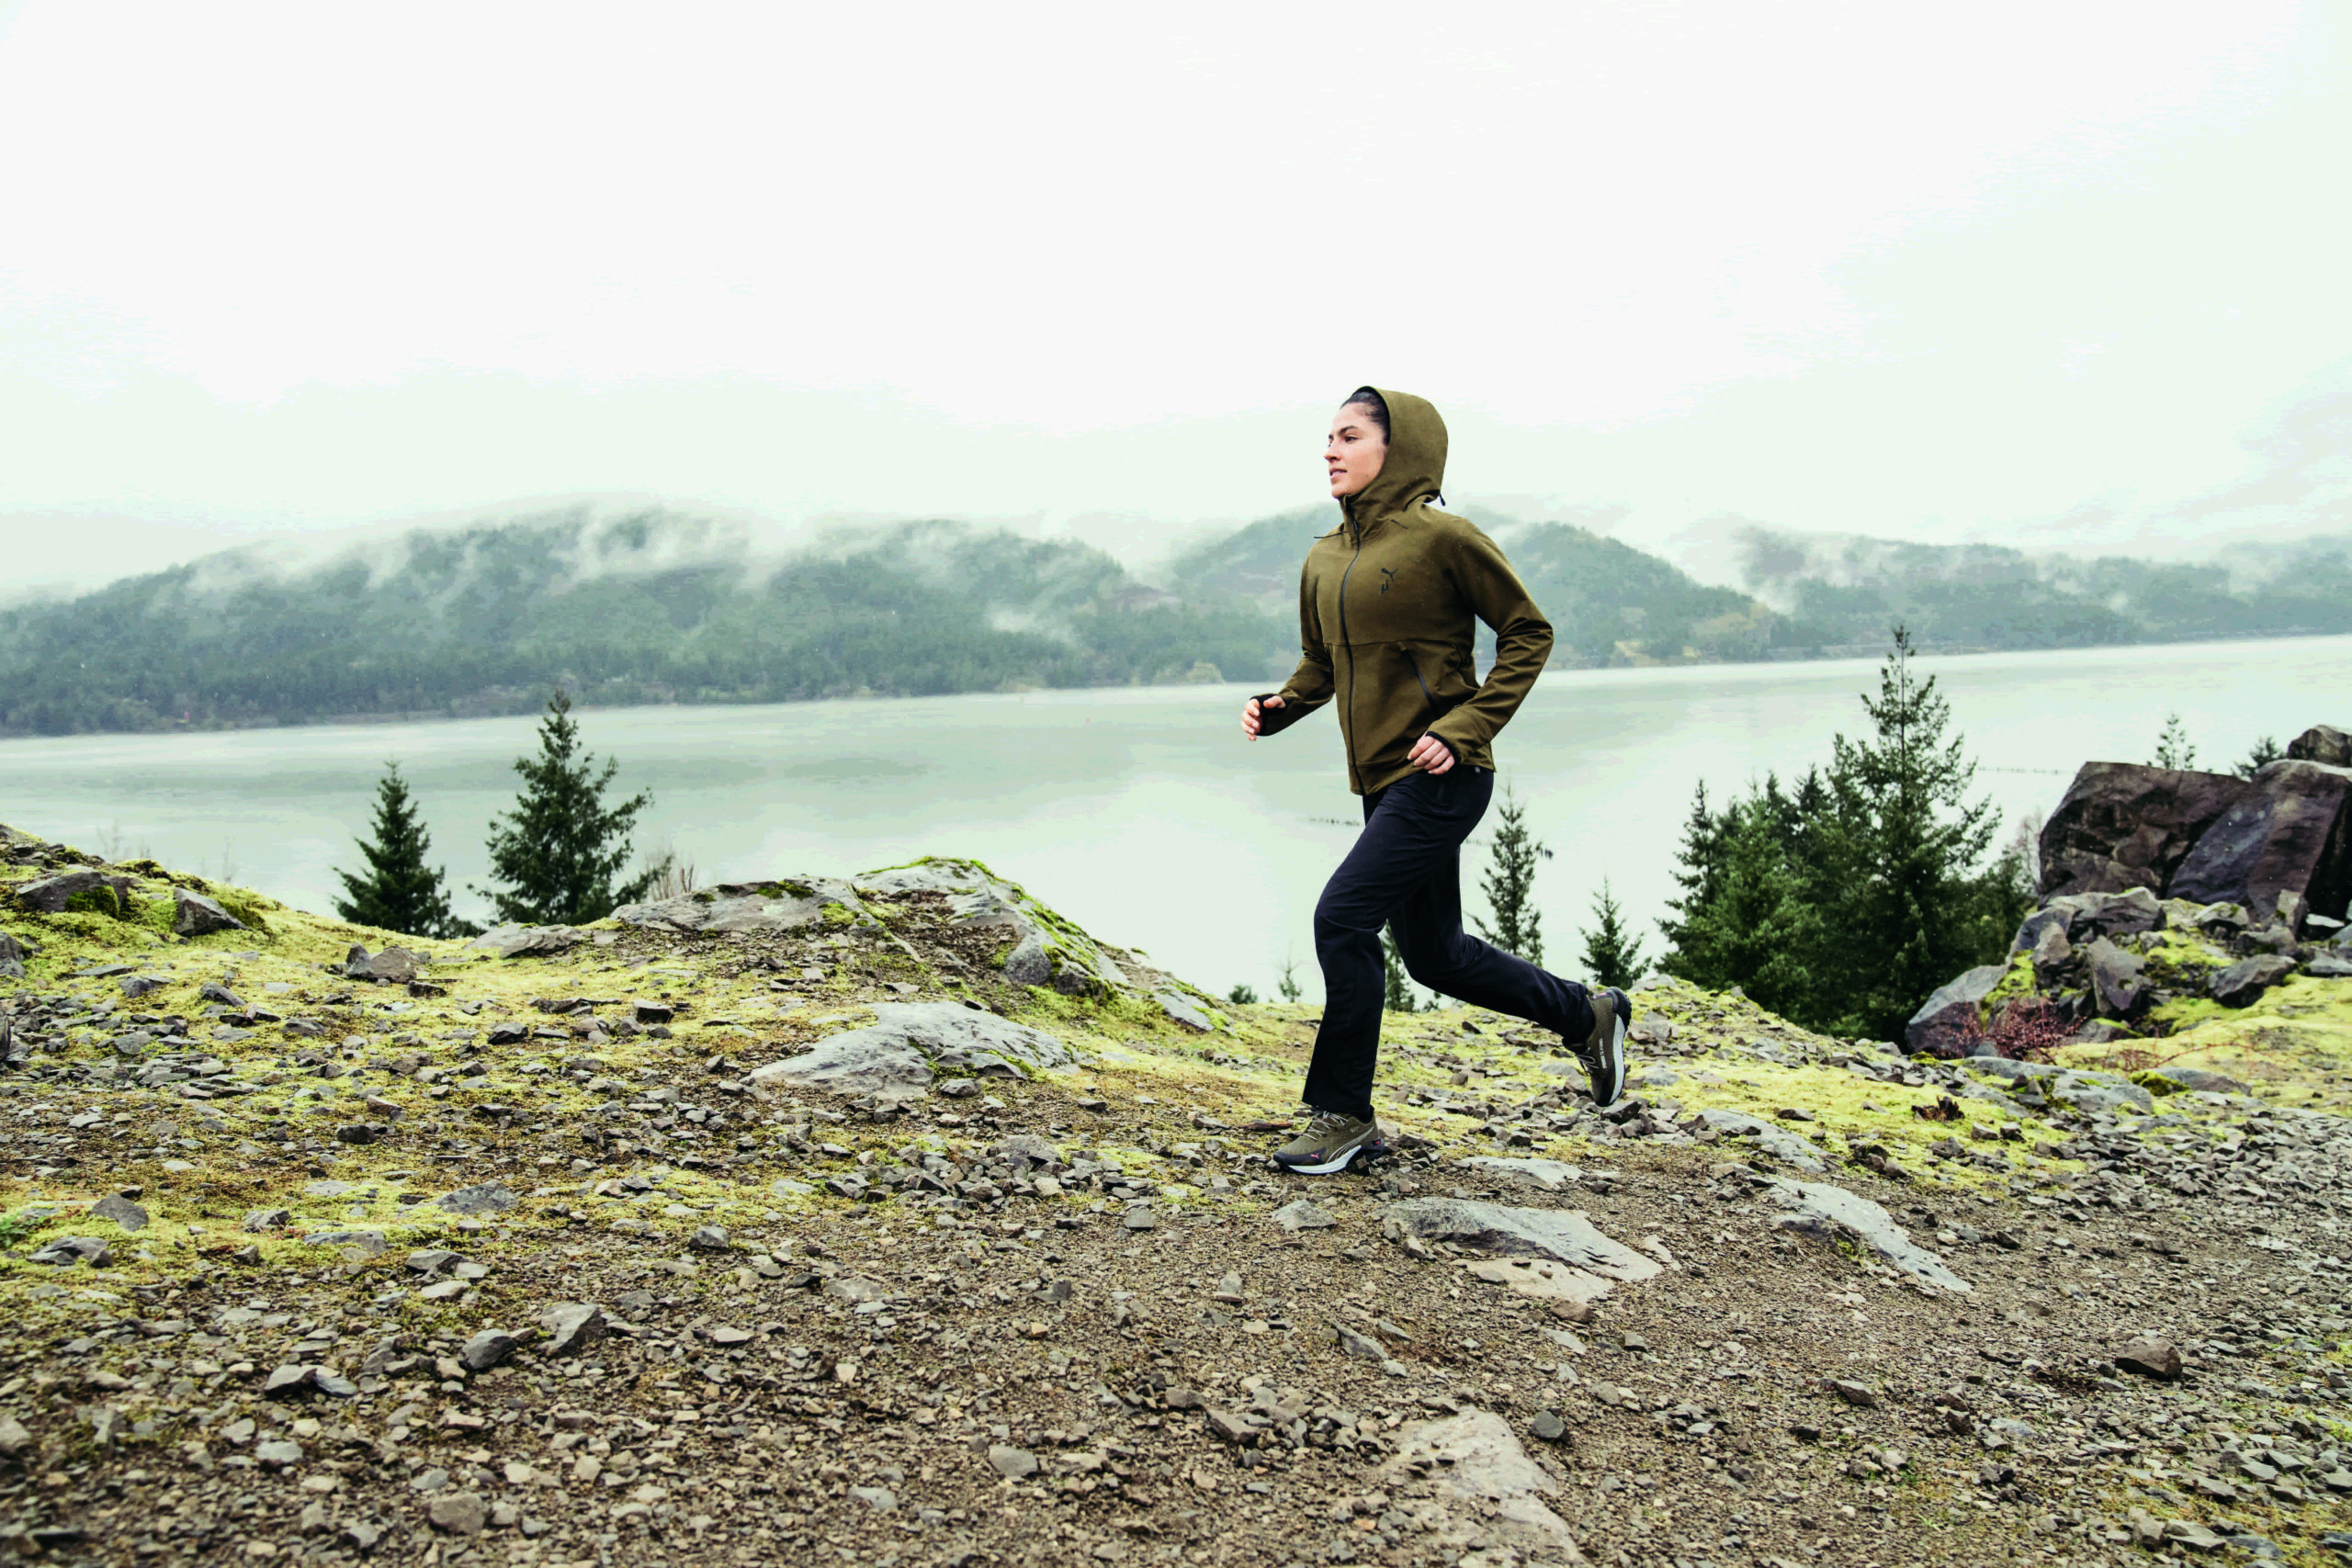 Vrouw is in koude omstandigheden aan het trailrunnen op een pad langs een meer met bergen op de achtergrond